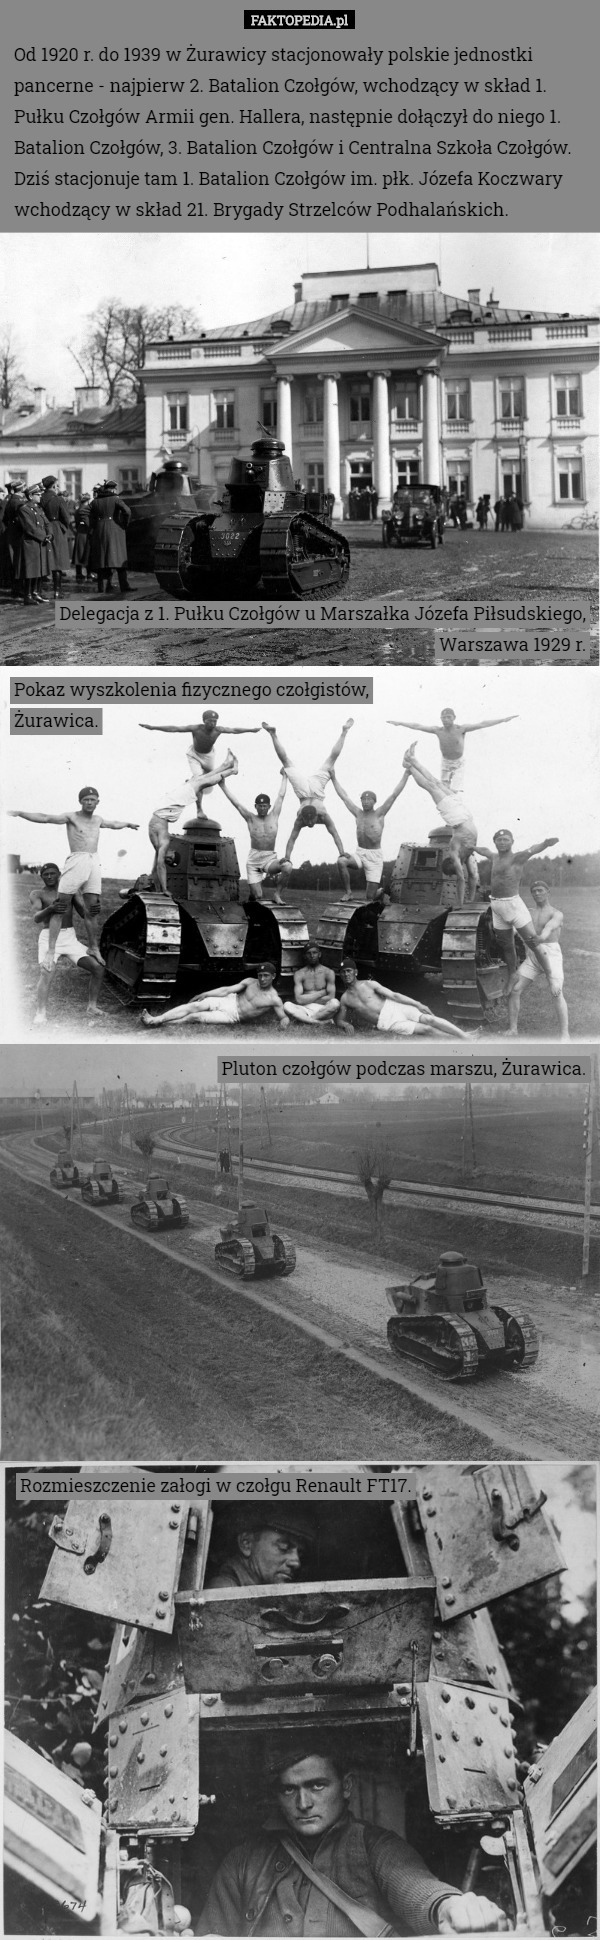 Od 1920 r. do 1939 w Żurawicy stacjonowały polskie jednostki pancerne - najpierw 2. Batalion Czołgów, wchodzący w skład 1. Pułku Czołgów Armii gen. Hallera, następnie dołączył do niego 1. Batalion Czołgów, 3. Batalion Czołgów i Centralna Szkoła Czołgów.
Dziś stacjonuje tam 1. Batalion Czołgów im. płk. Józefa Koczwary wchodzący w skład 21. Brygady Strzelców Podhalańskich. Delegacja z 1. Pułku Czołgów u Marszałka Józefa Piłsudskiego, Warszawa 1929 r. Pokaz wyszkolenia fizycznego czołgistów,
Żurawica. Pluton czołgów podczas marszu, Żurawica. Rozmieszczenie załogi w czołgu Renault FT17. 